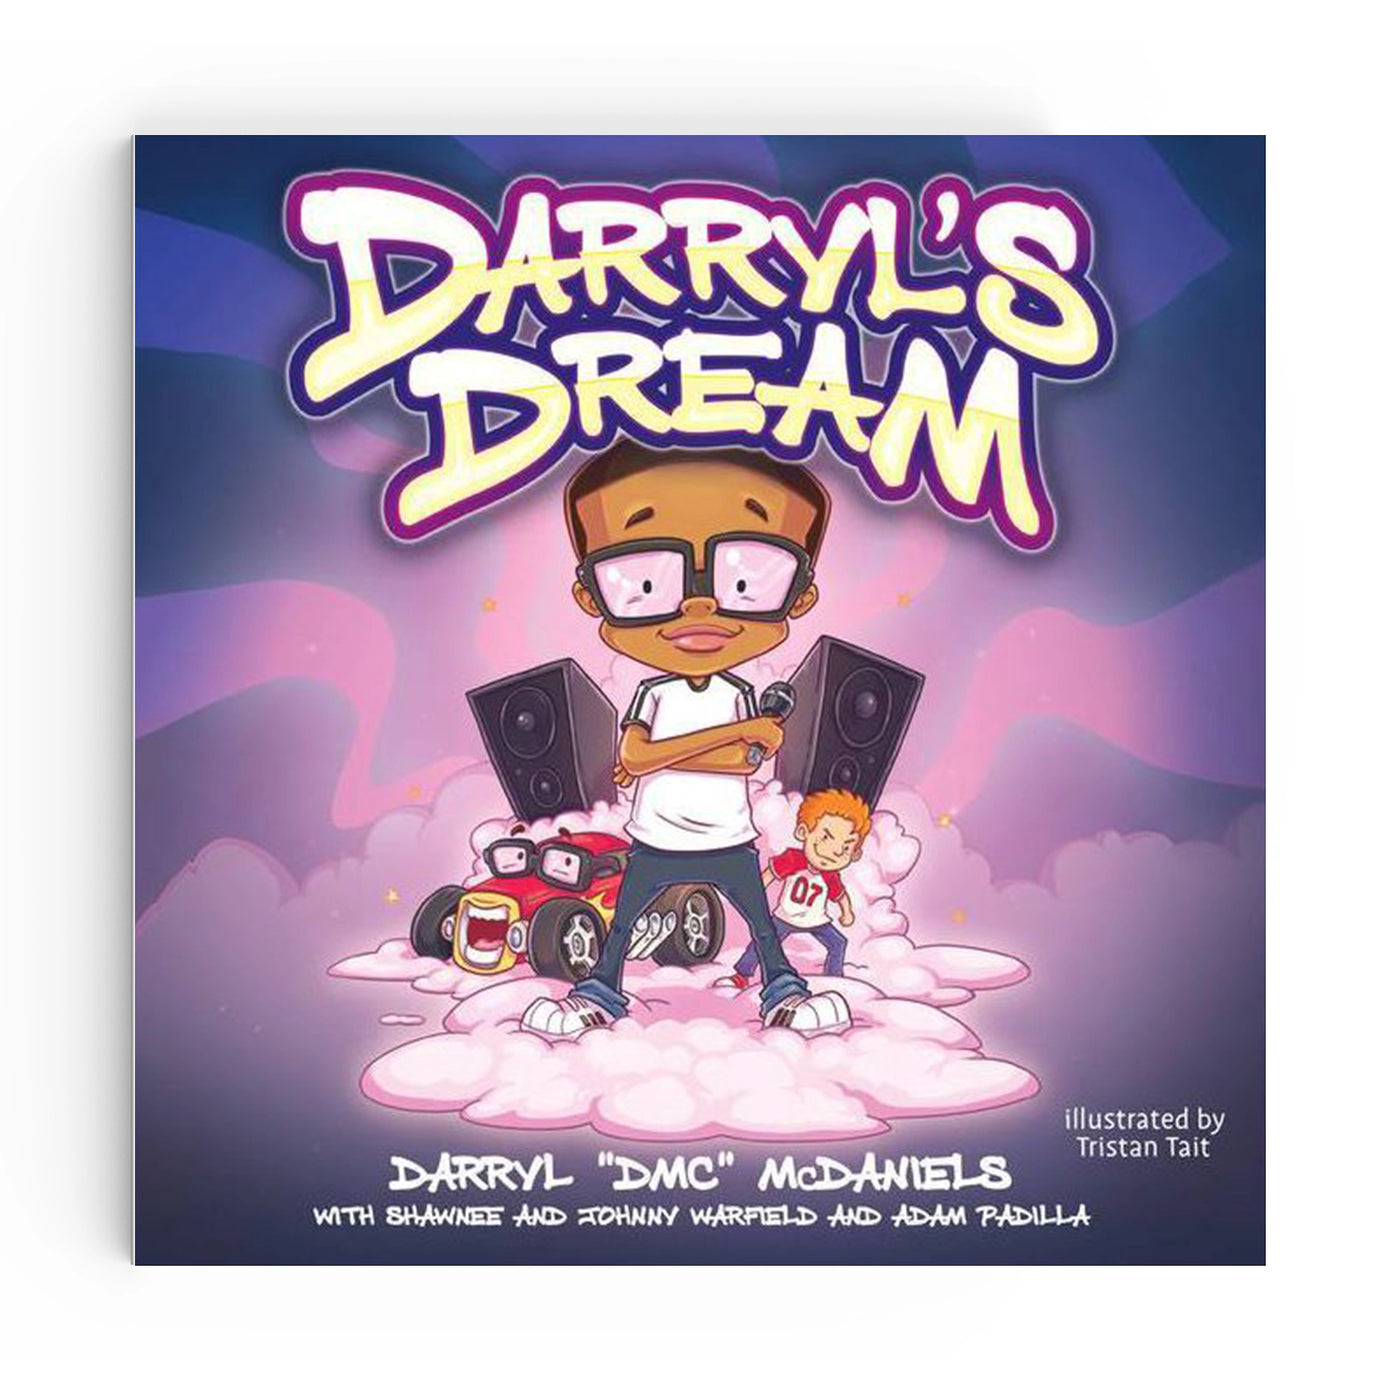 Darryl’s Dream by Darryl "DMC" McDaniels